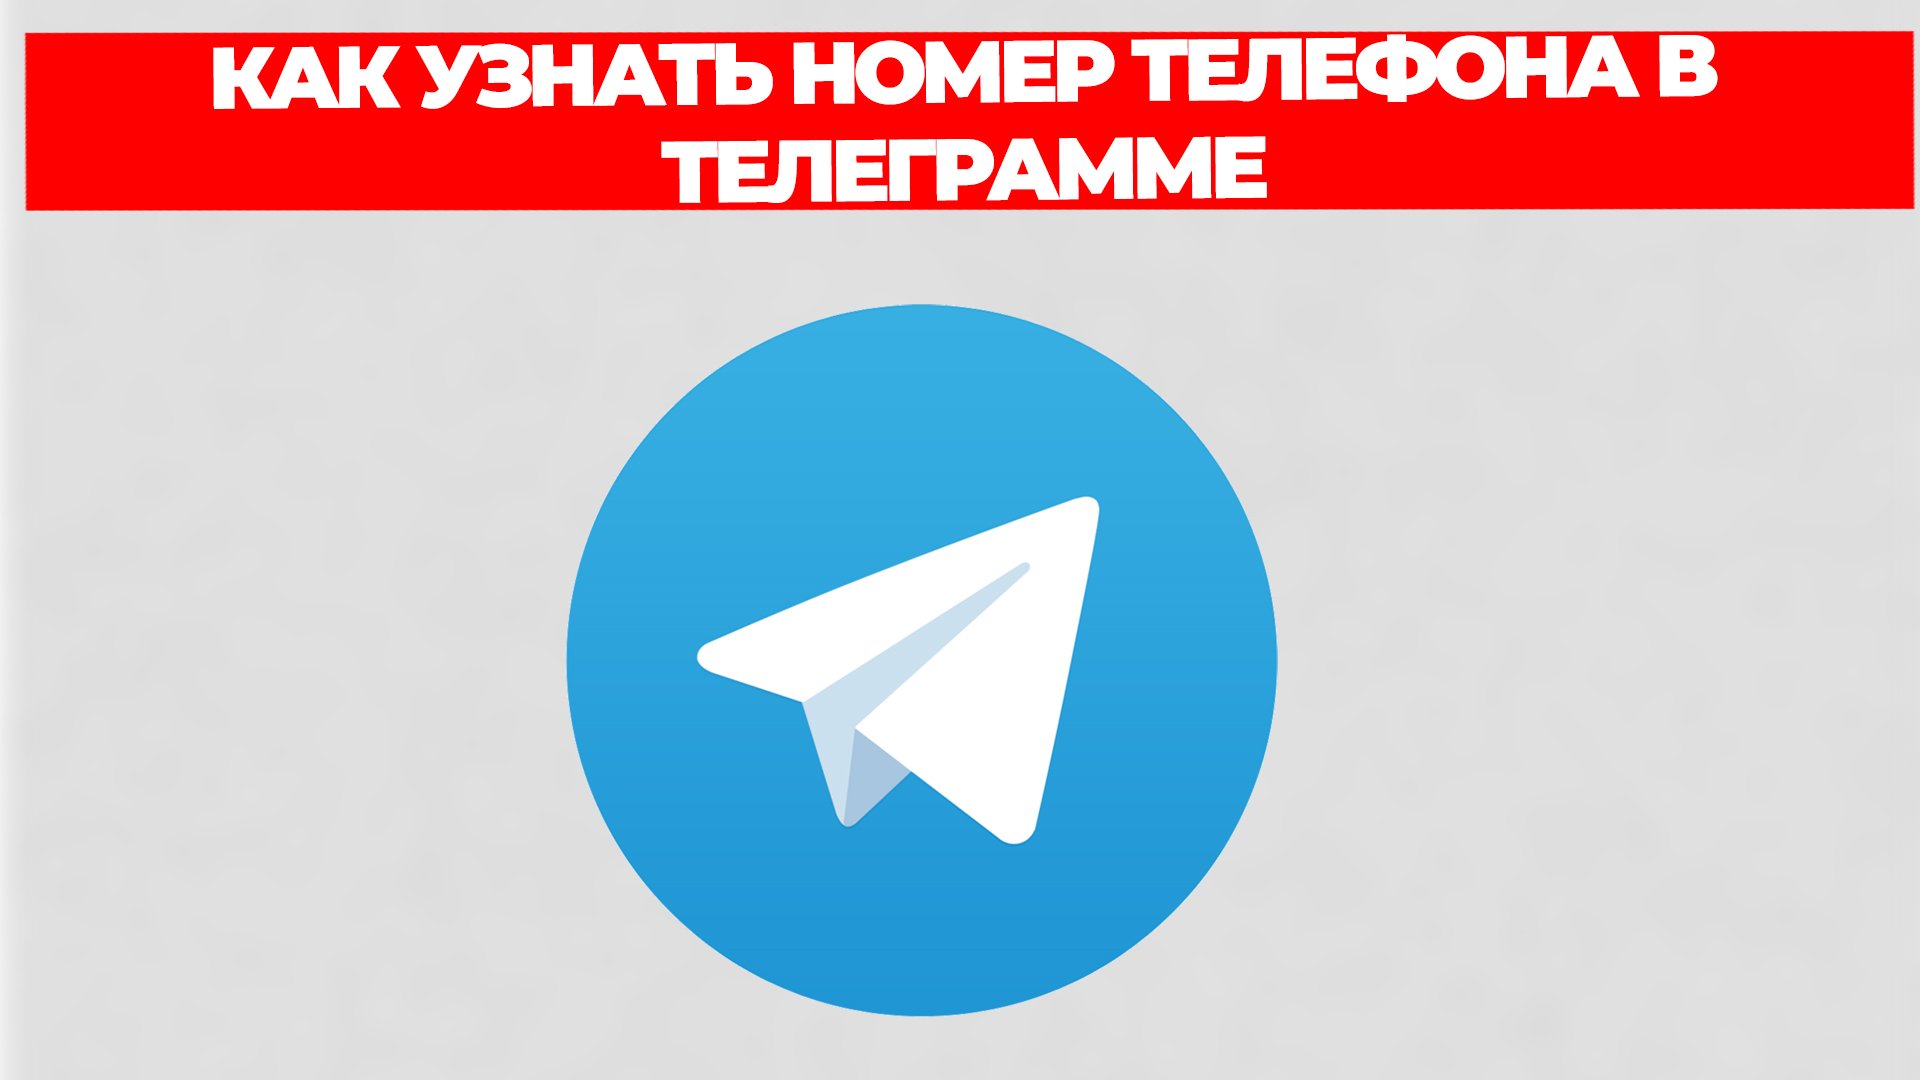 Скачать телеграмм бесплатно на русском языке на телефон бесплатно без вирусов без регистрации быстро фото 84